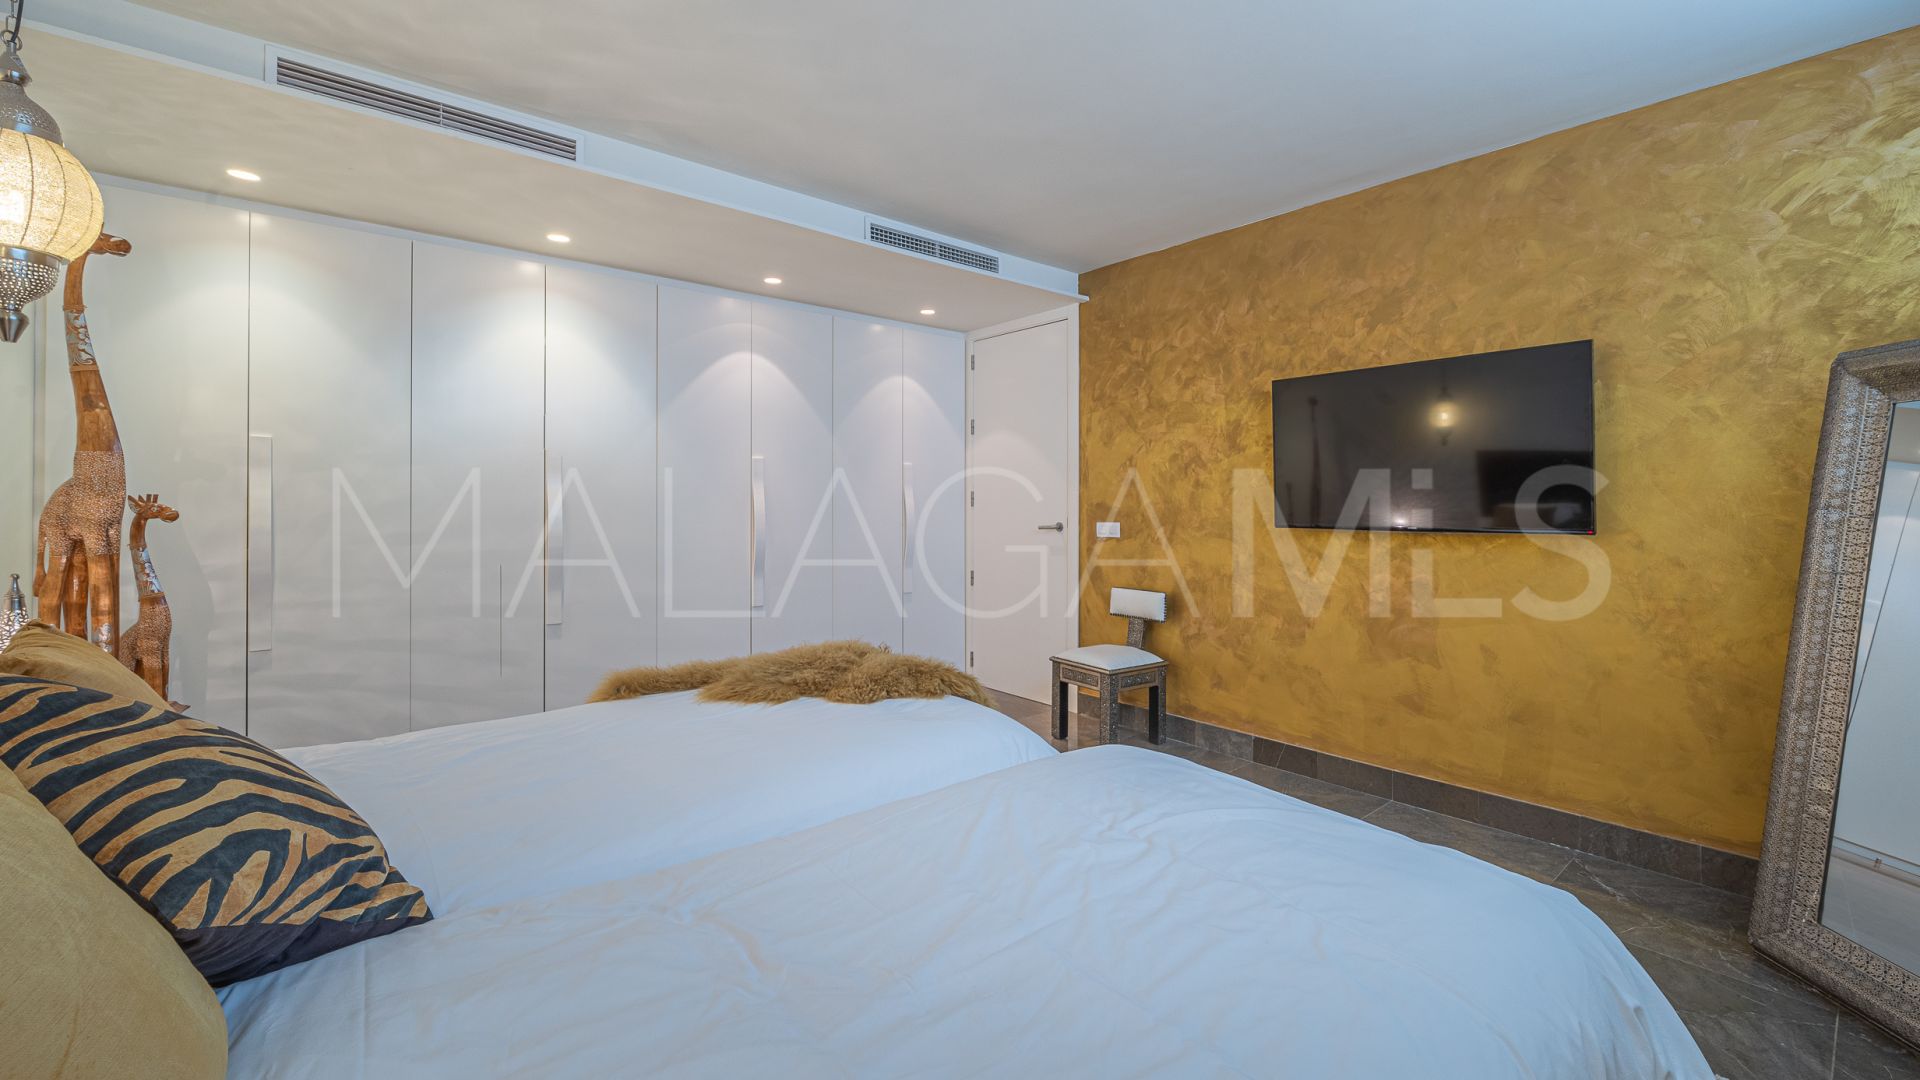 For sale villa with 4 bedrooms in Marbella Montaña